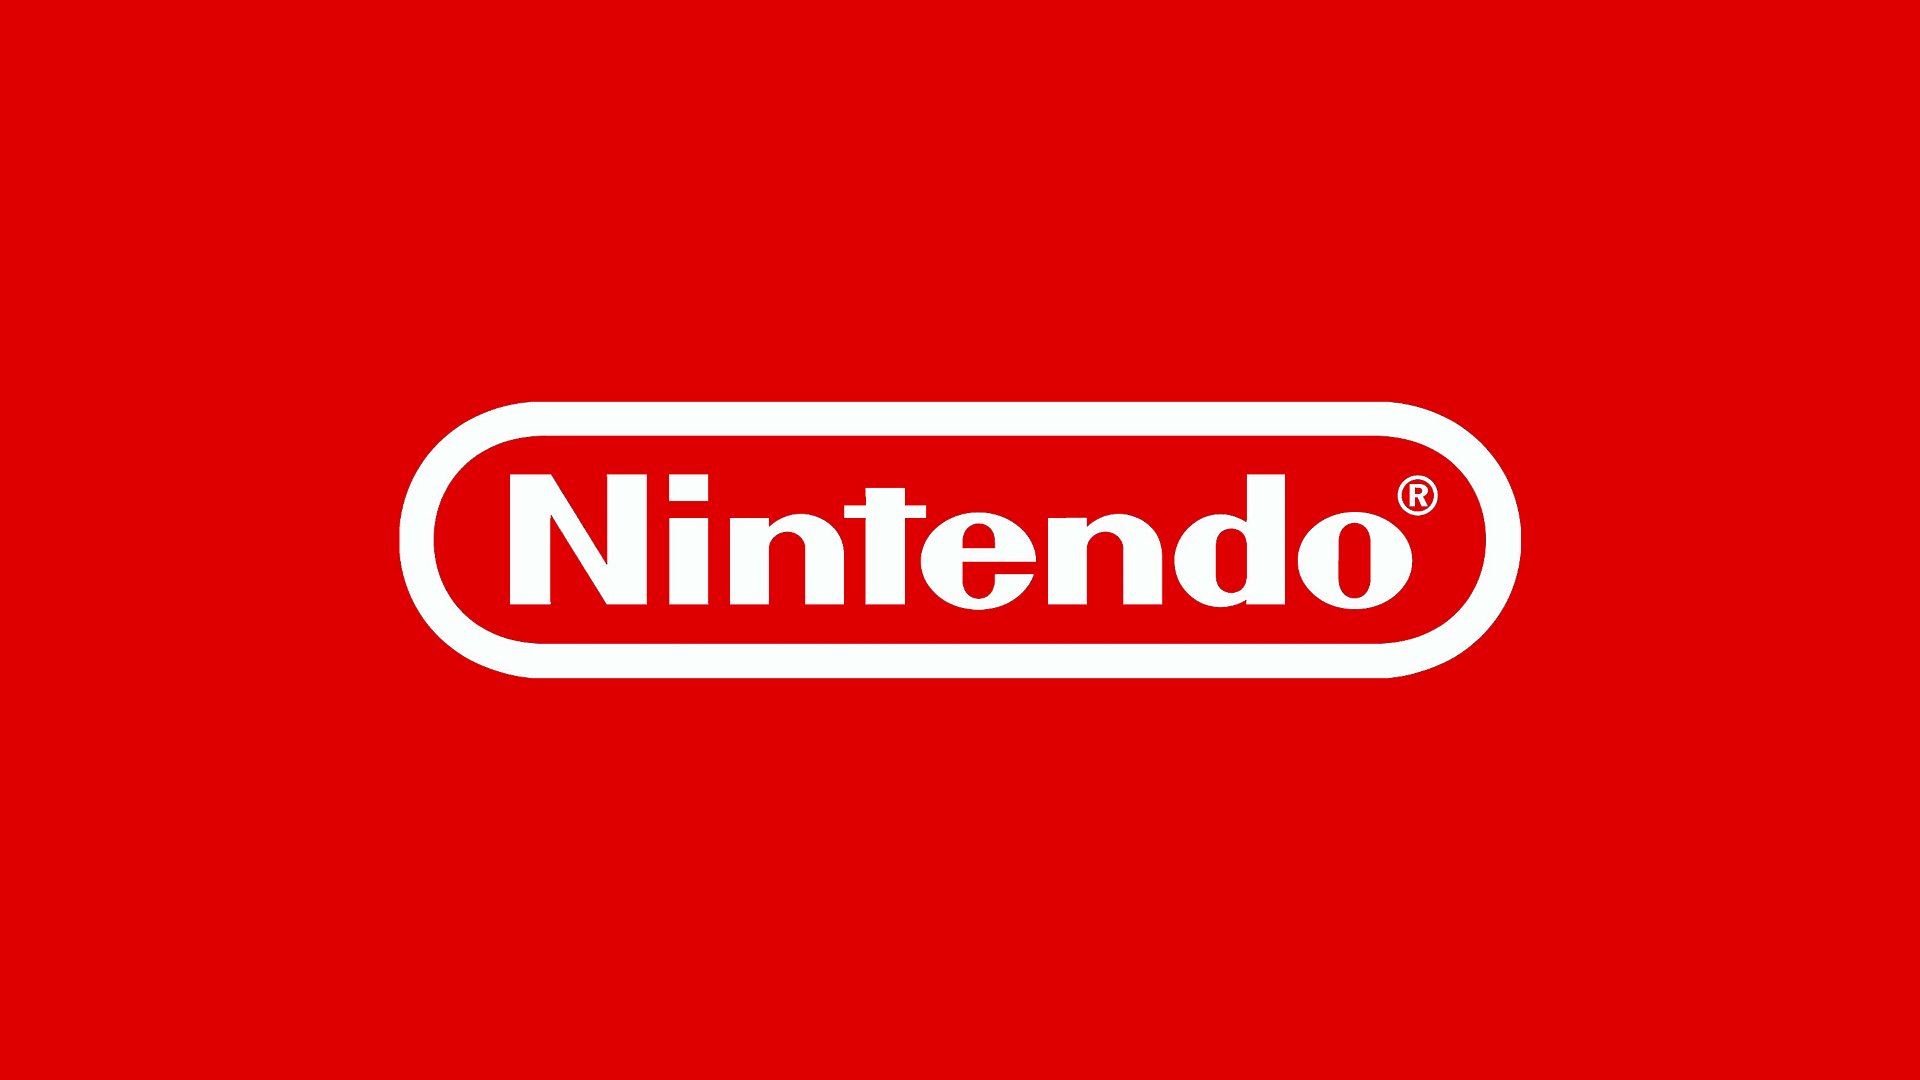 El logo de Nintendo con fondo rojo.